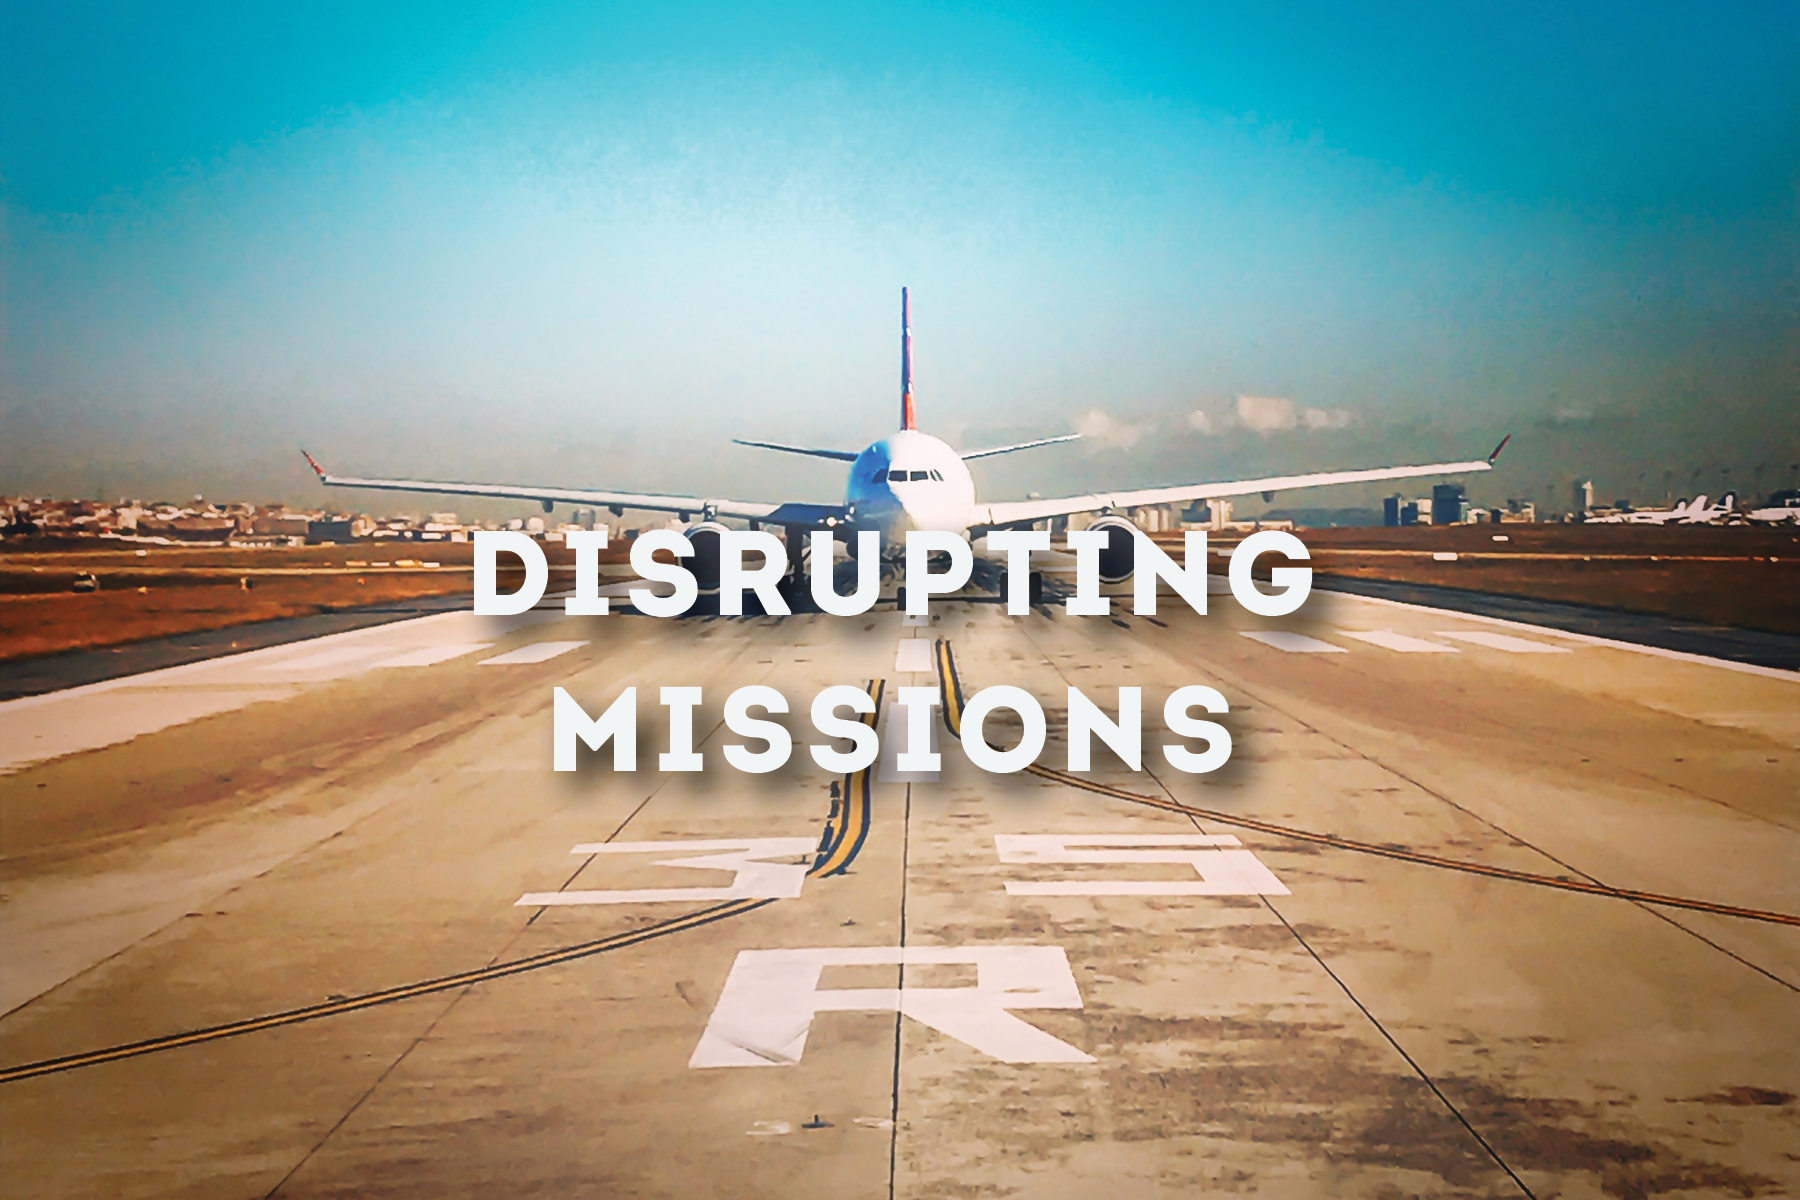 Disrupting missions